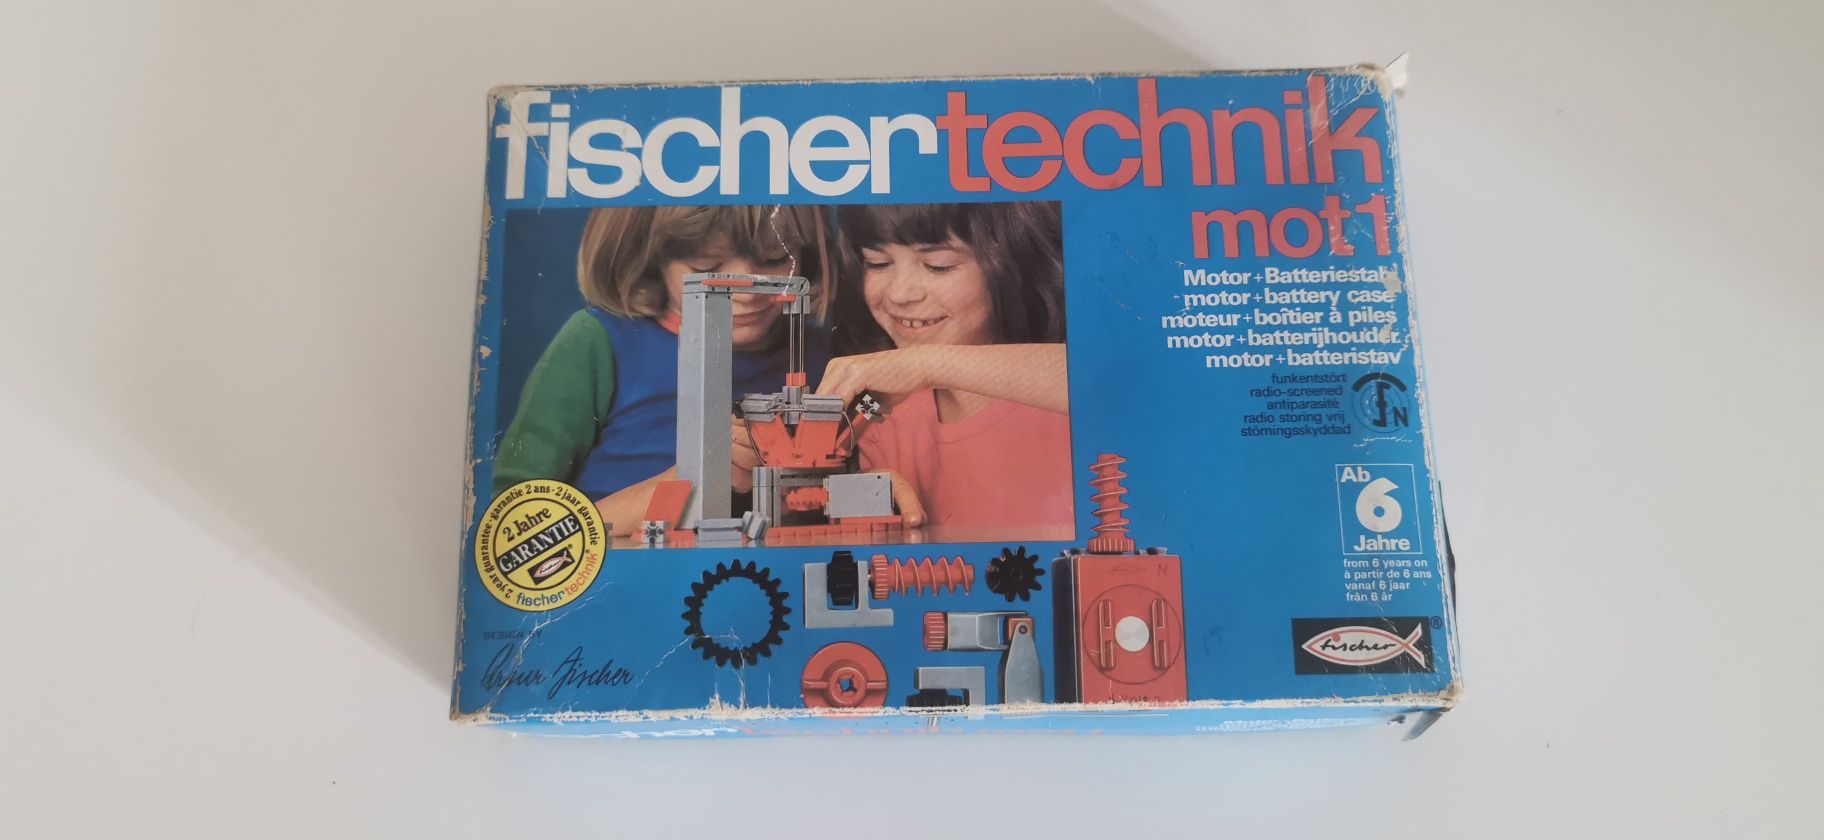 Fishertechnik Mot 1 zestaw z lat 70